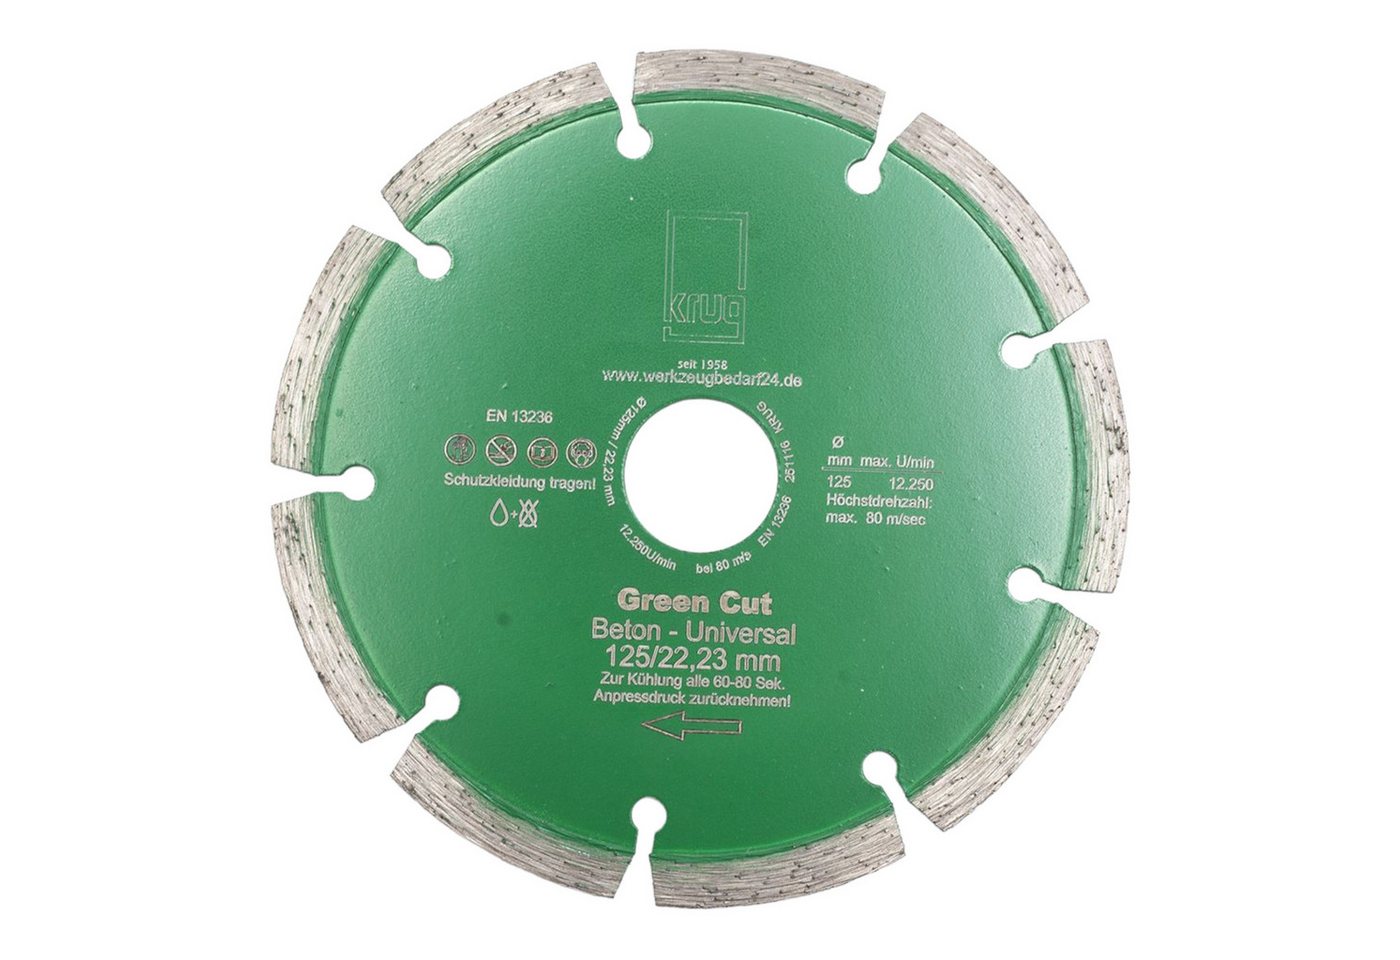 Fritz Krug Trennscheiben Diamantscheibe Green Cut Beton Universal 125 mm für Beton Granit von Fritz Krug